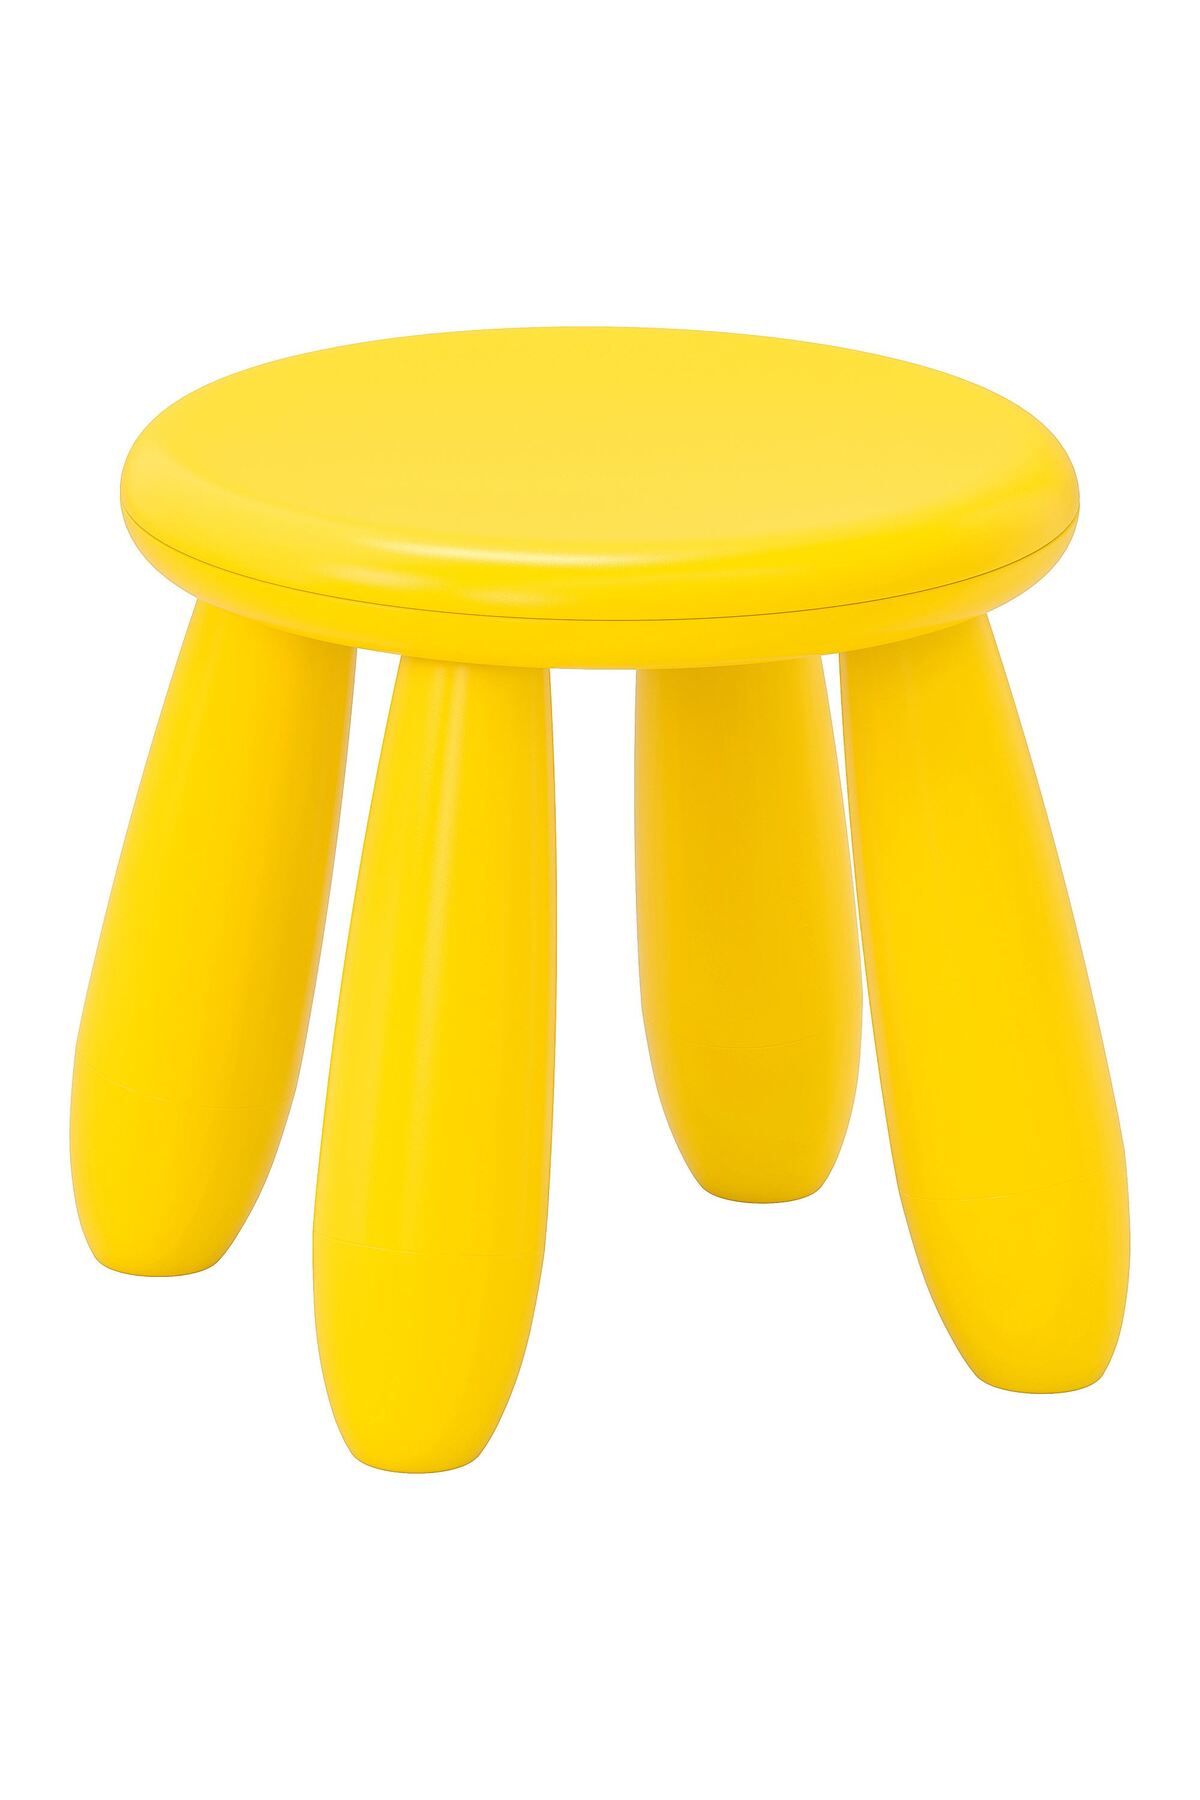 IKEA Çoçuk Taburesi Sarı Renkli İkea çoçuk tabure